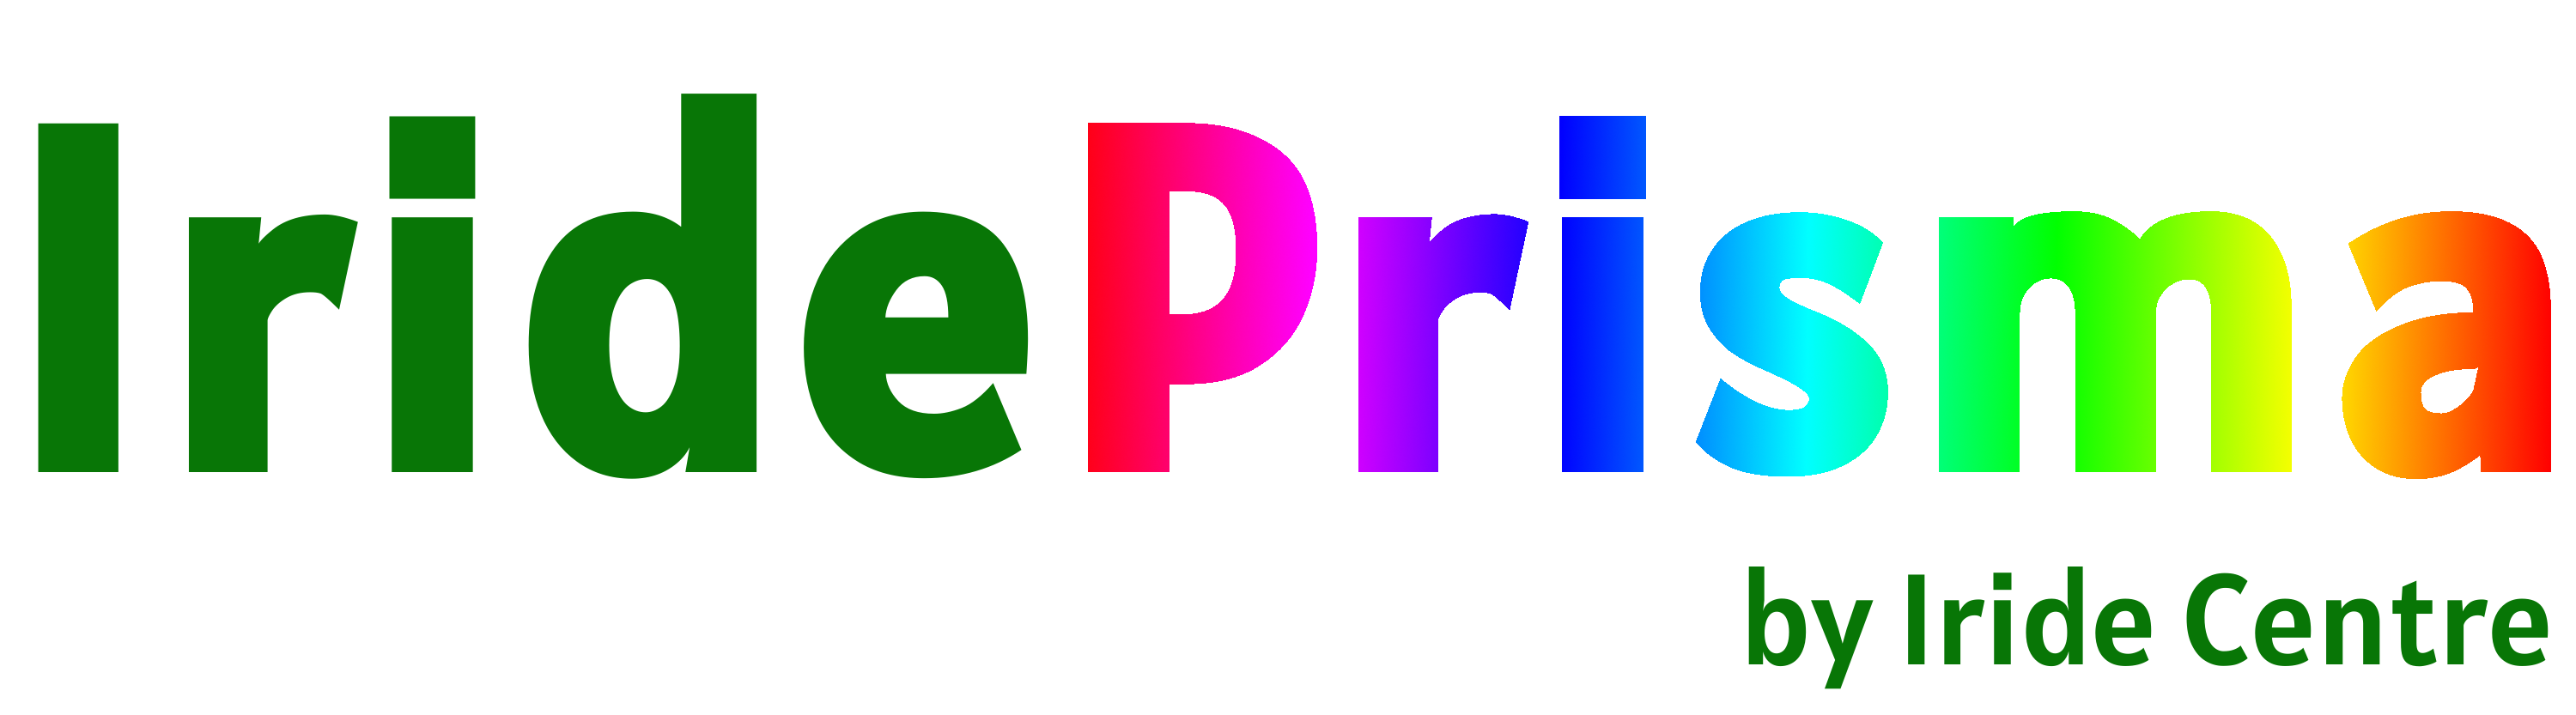 Logo Prisma sem fundo